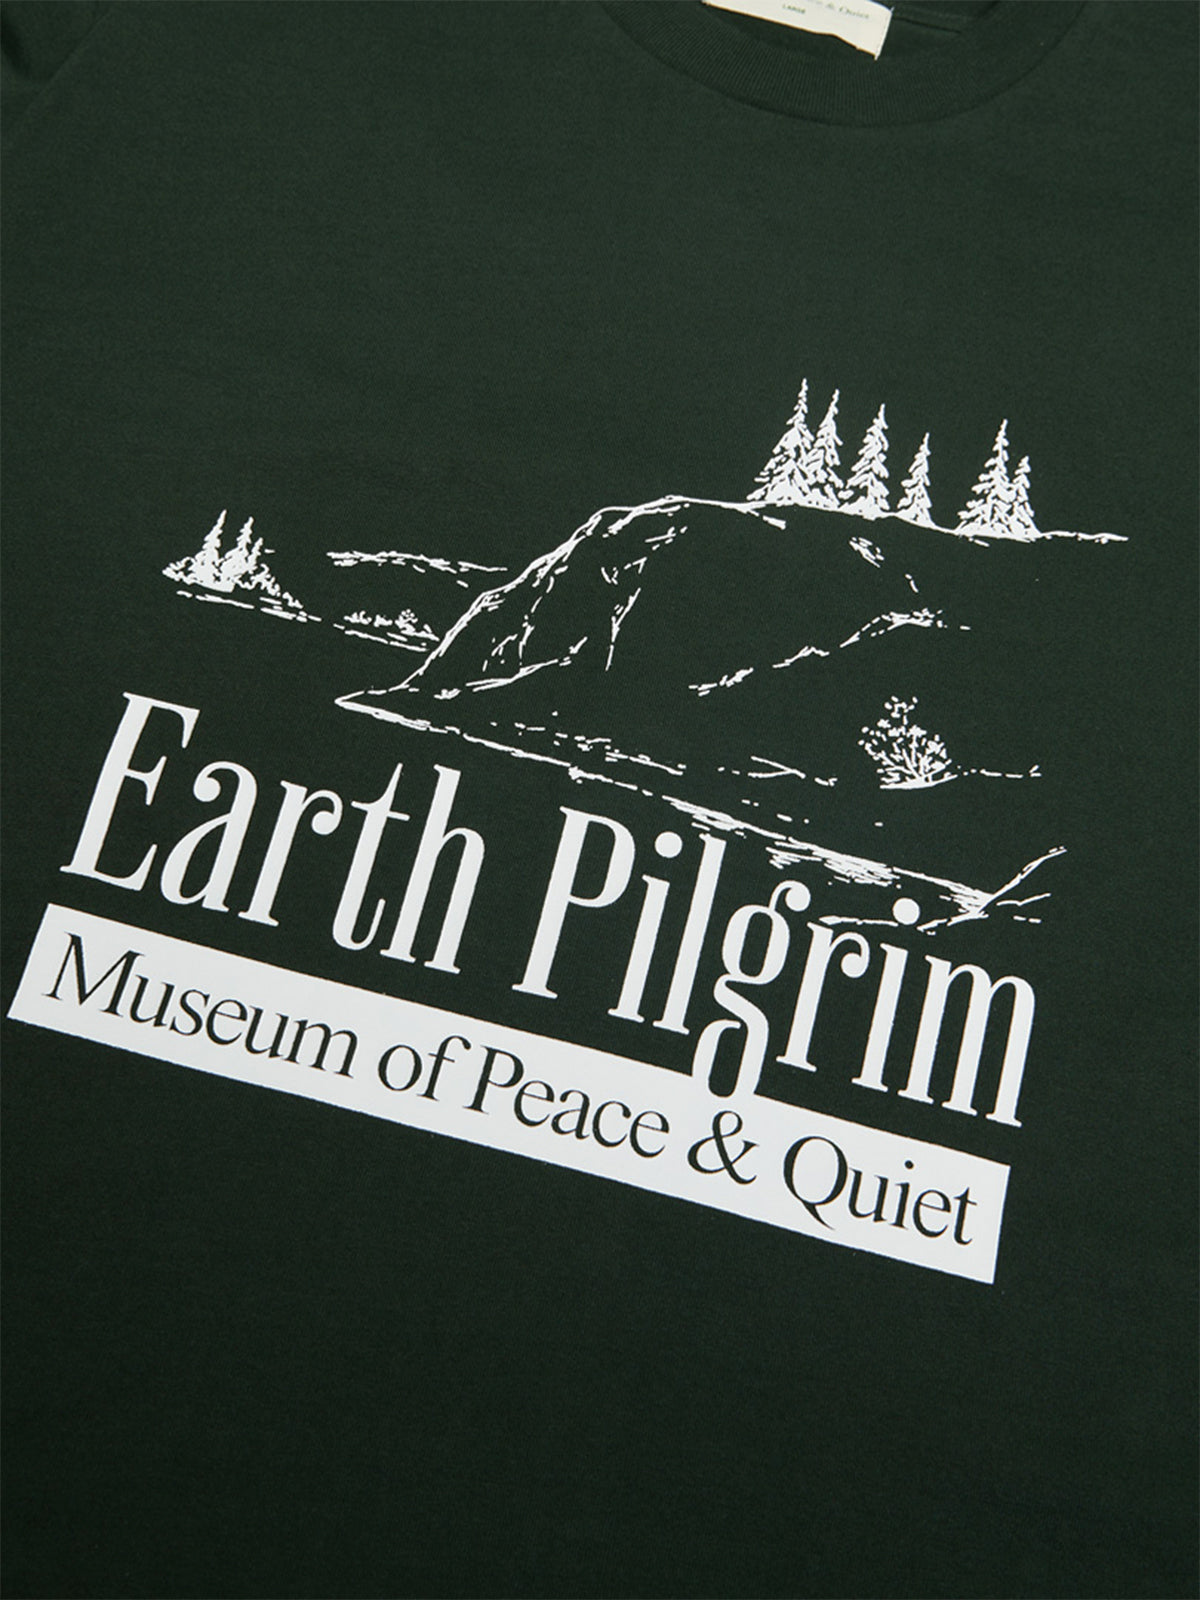 Earth Pilgrim T-Shirt i Grøn